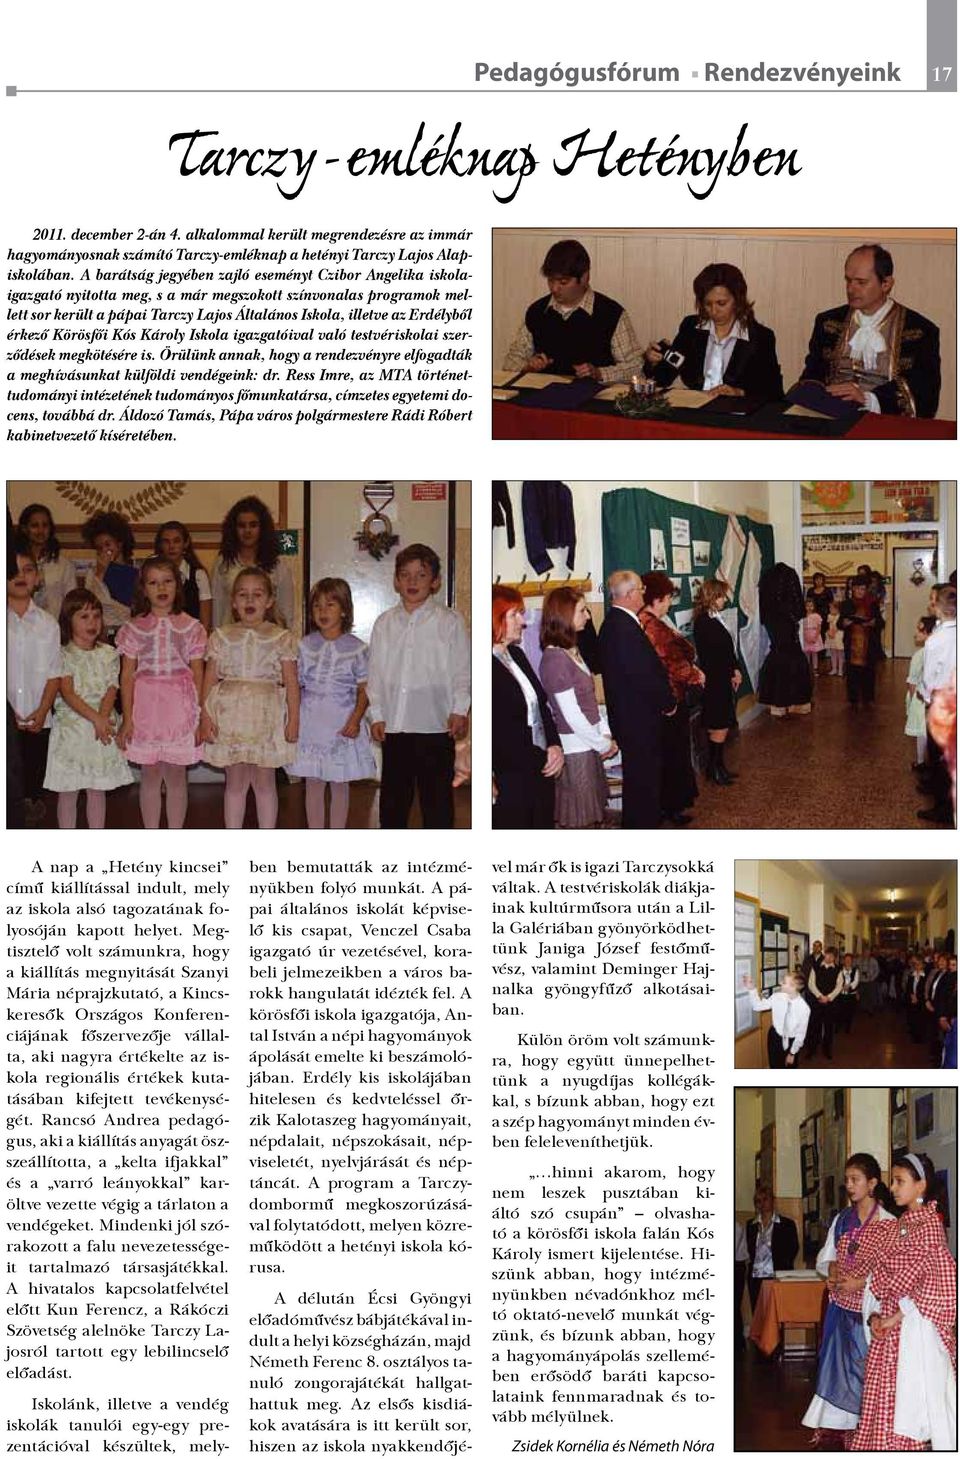 A barátság jegyében zajló eseményt Czibor Angelika iskolaigazgató nyitotta meg, s a már megszokott színvonalas programok mellett sor került a pápai Tarczy Lajos Általános Iskola, illetve az Erdélyből